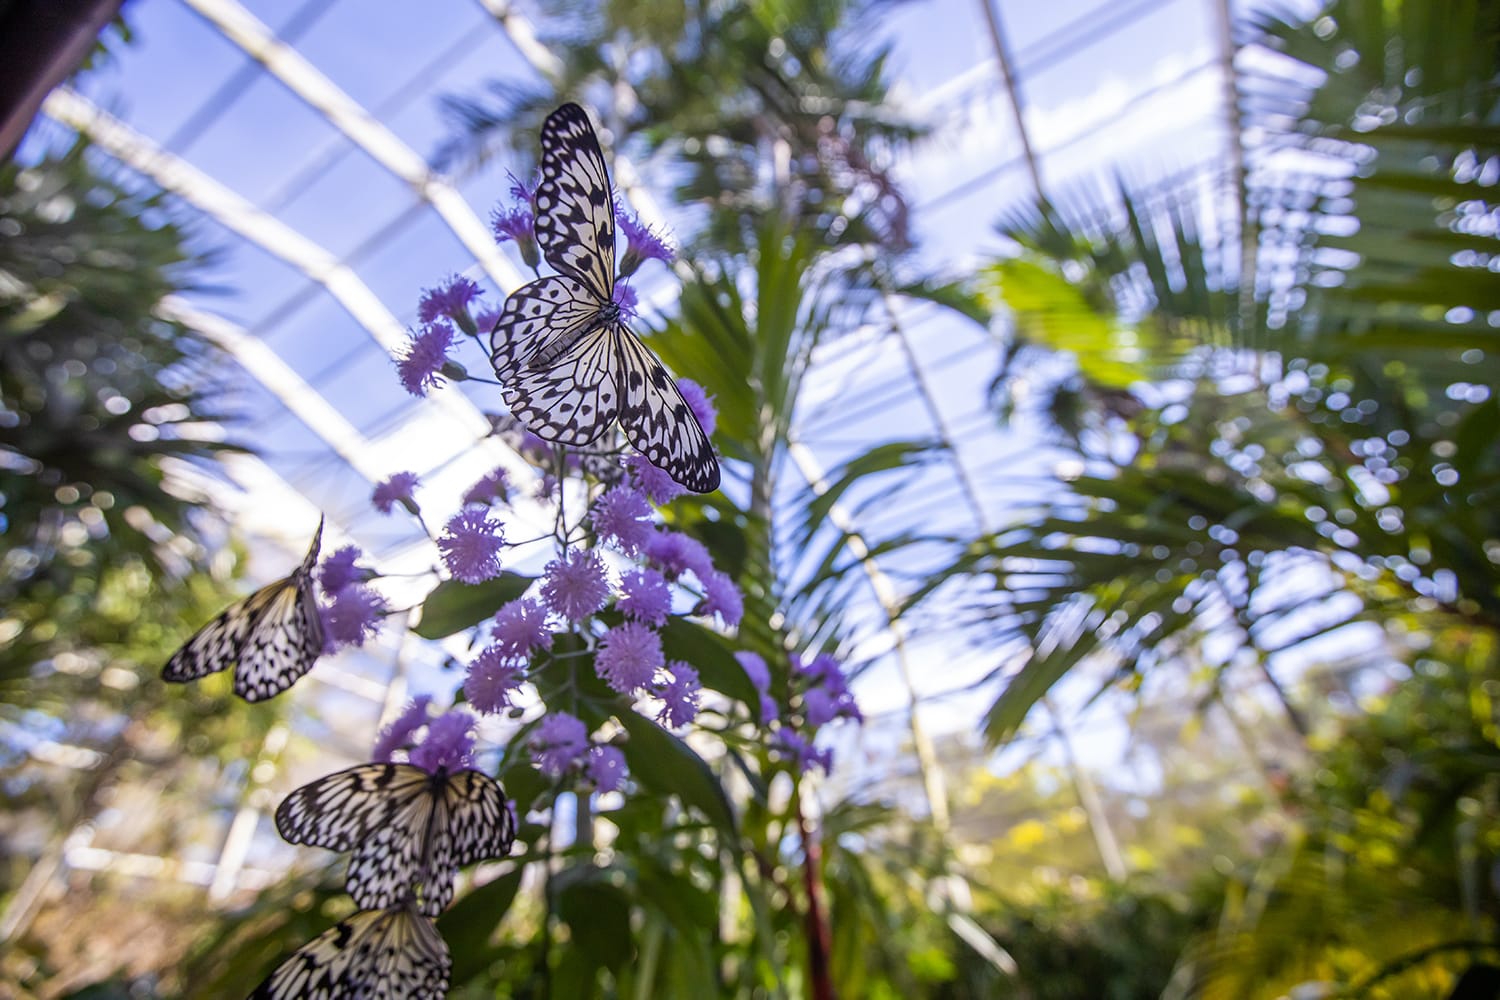 Fairchild Tropical Botanic Garden in Florida, USA